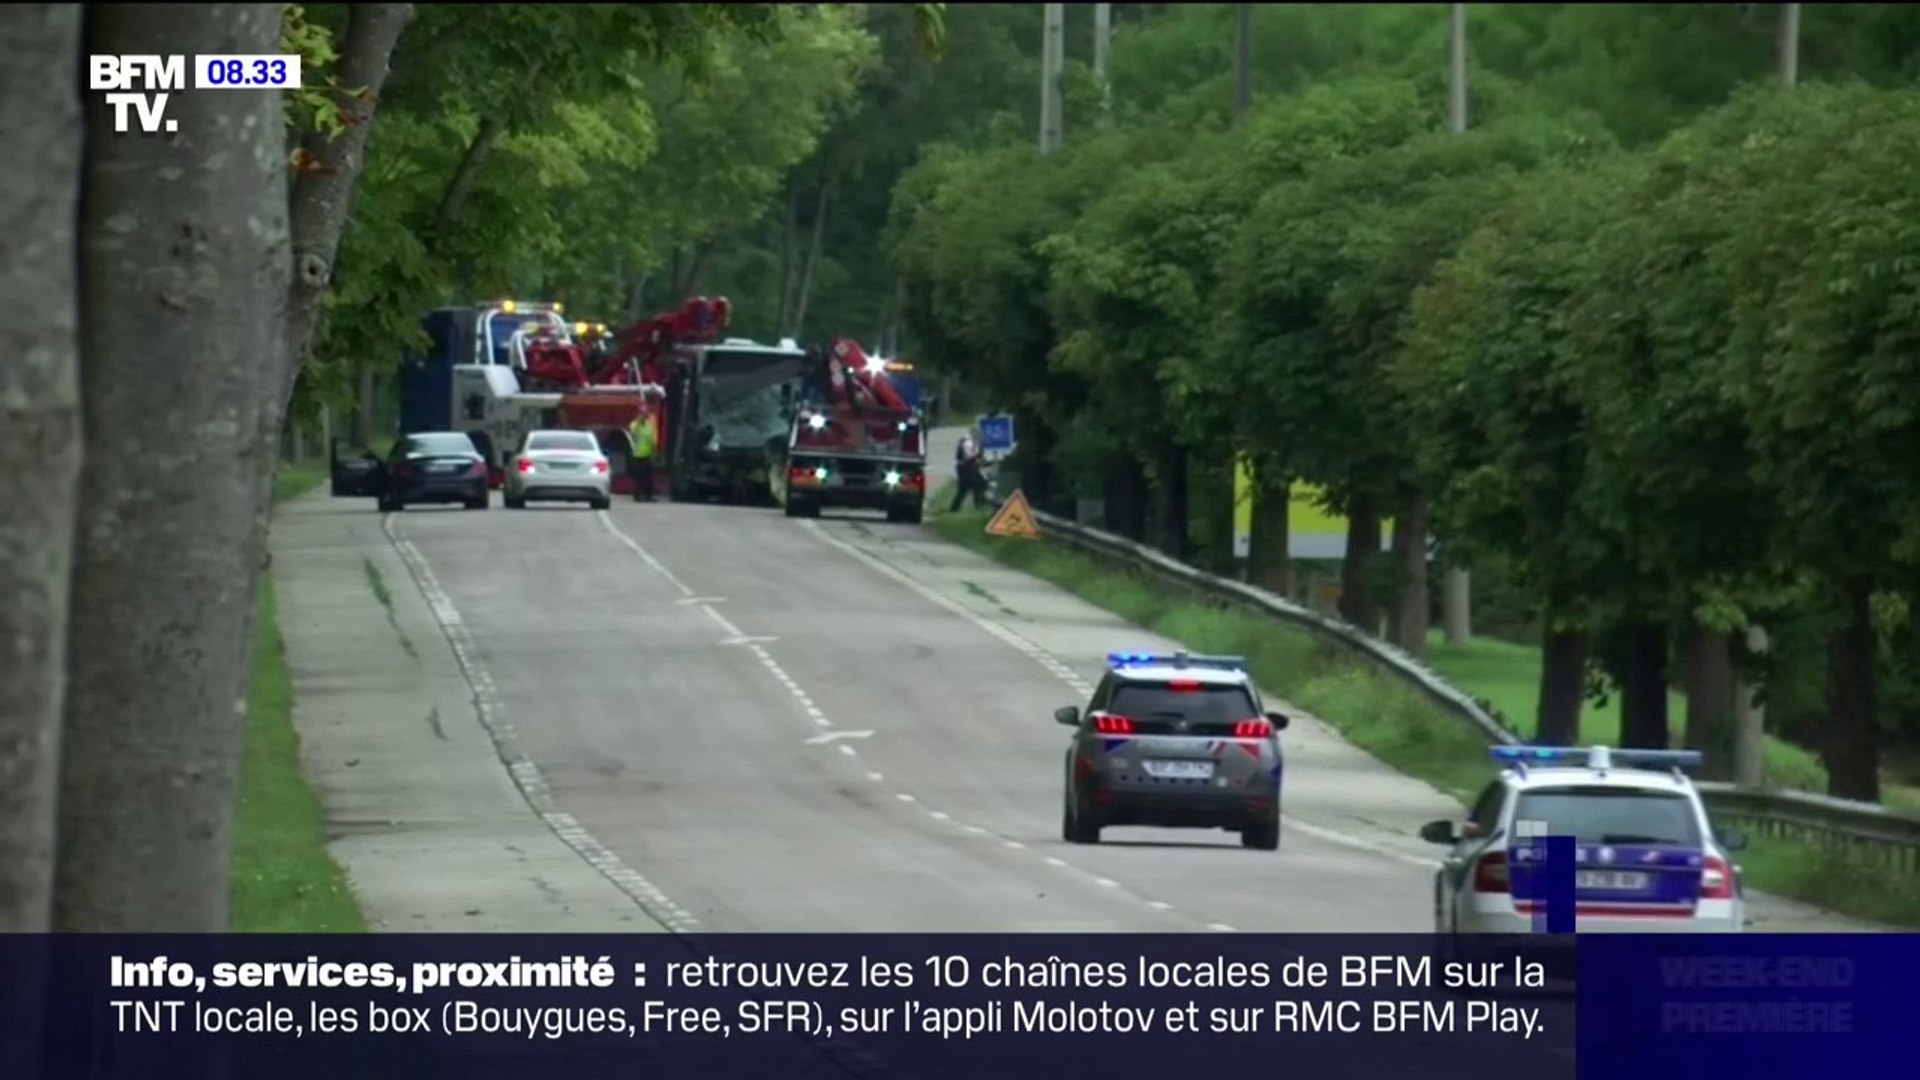 Alcool au volant: un homme de 21 ans cause la mort de deux personnes dans  un accident de la route dans les Yvelines - Vidéo Dailymotion